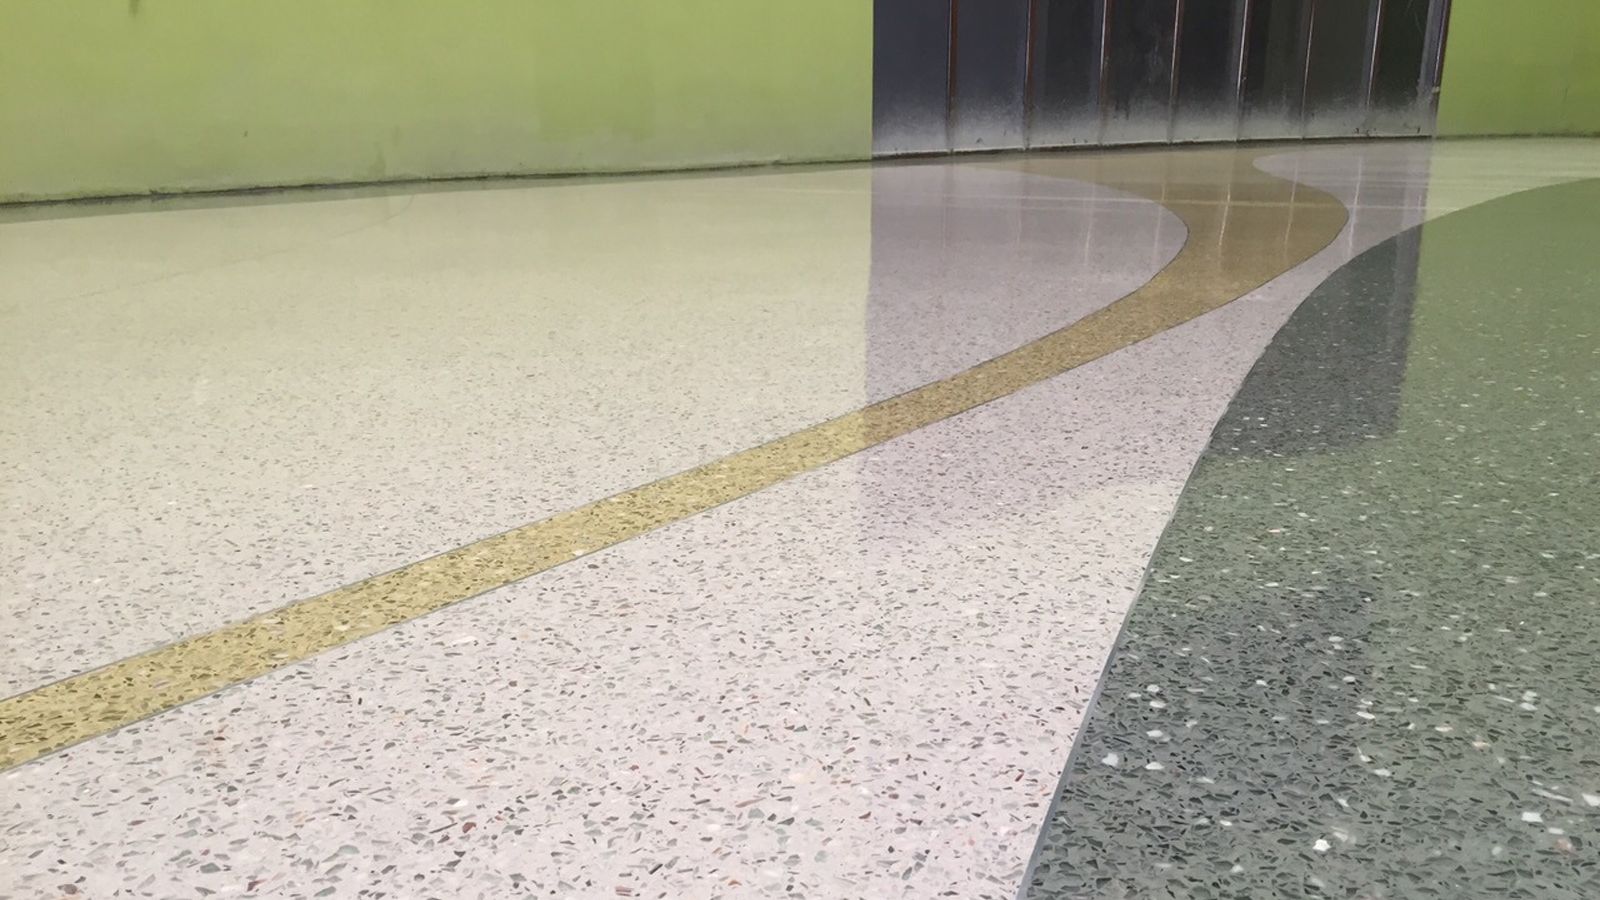 Sikafloor® Terrazzo floor in hospital healthcare